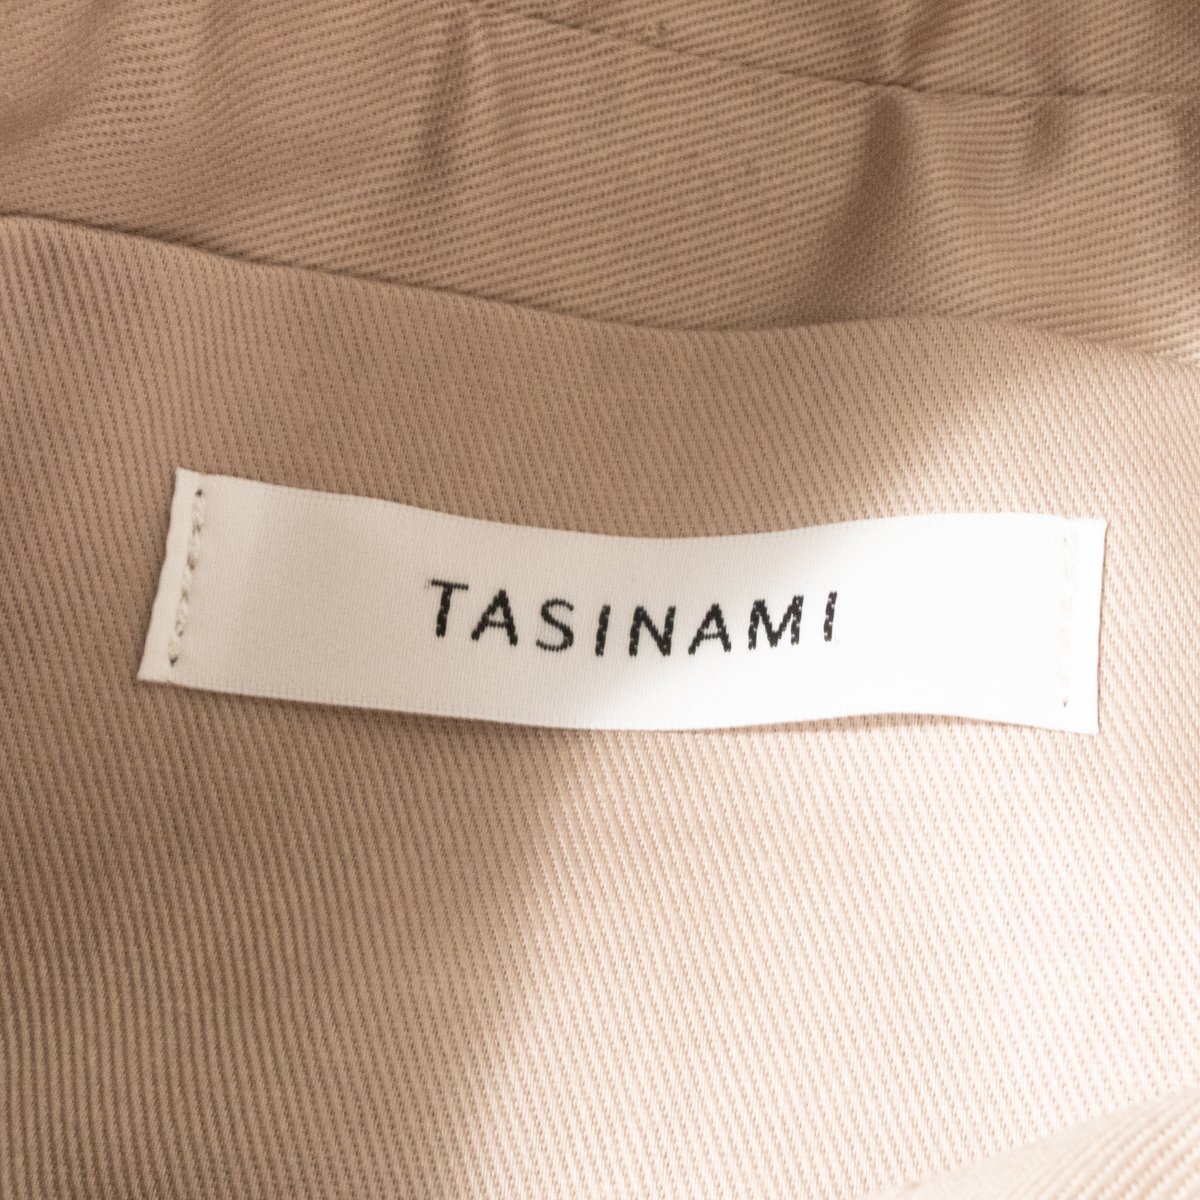 【1円スタート】TASINAMI タシナミ ポシェット ショルダーバッグ 肩掛け鞄 斜め掛け 日本製 レザー 本革 ベージュブラウン キレイめ 婦人